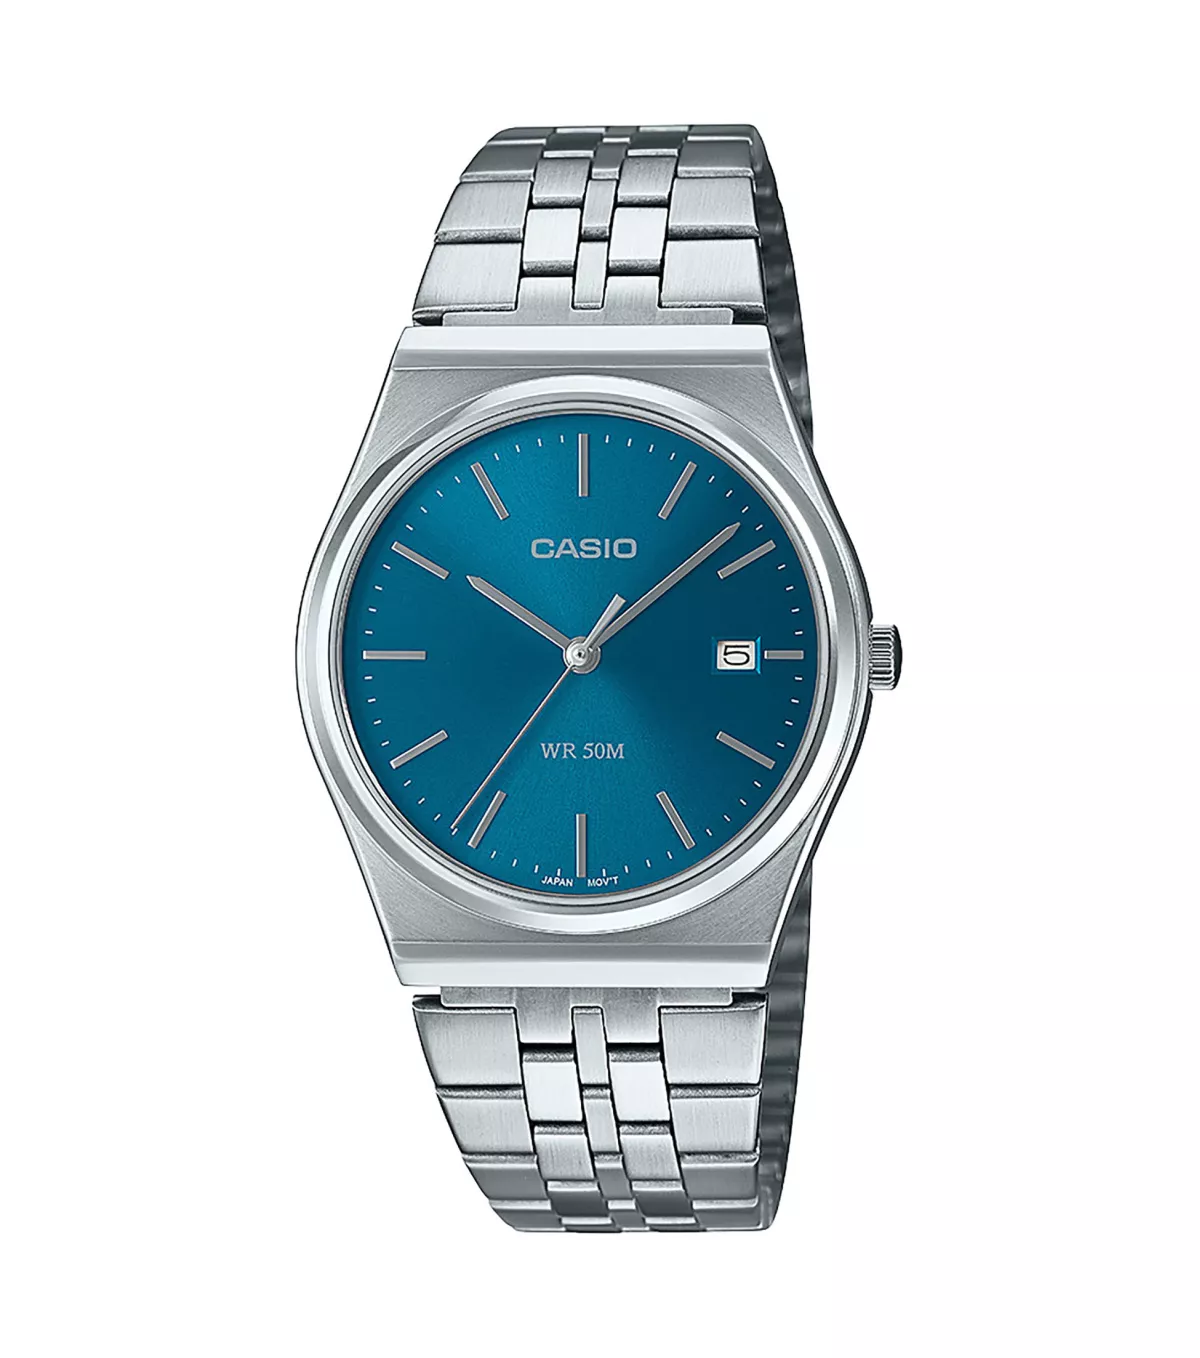 CASIO MTP-B145D-2A2VEF Uhr, Casio Collection, Silber/Blau